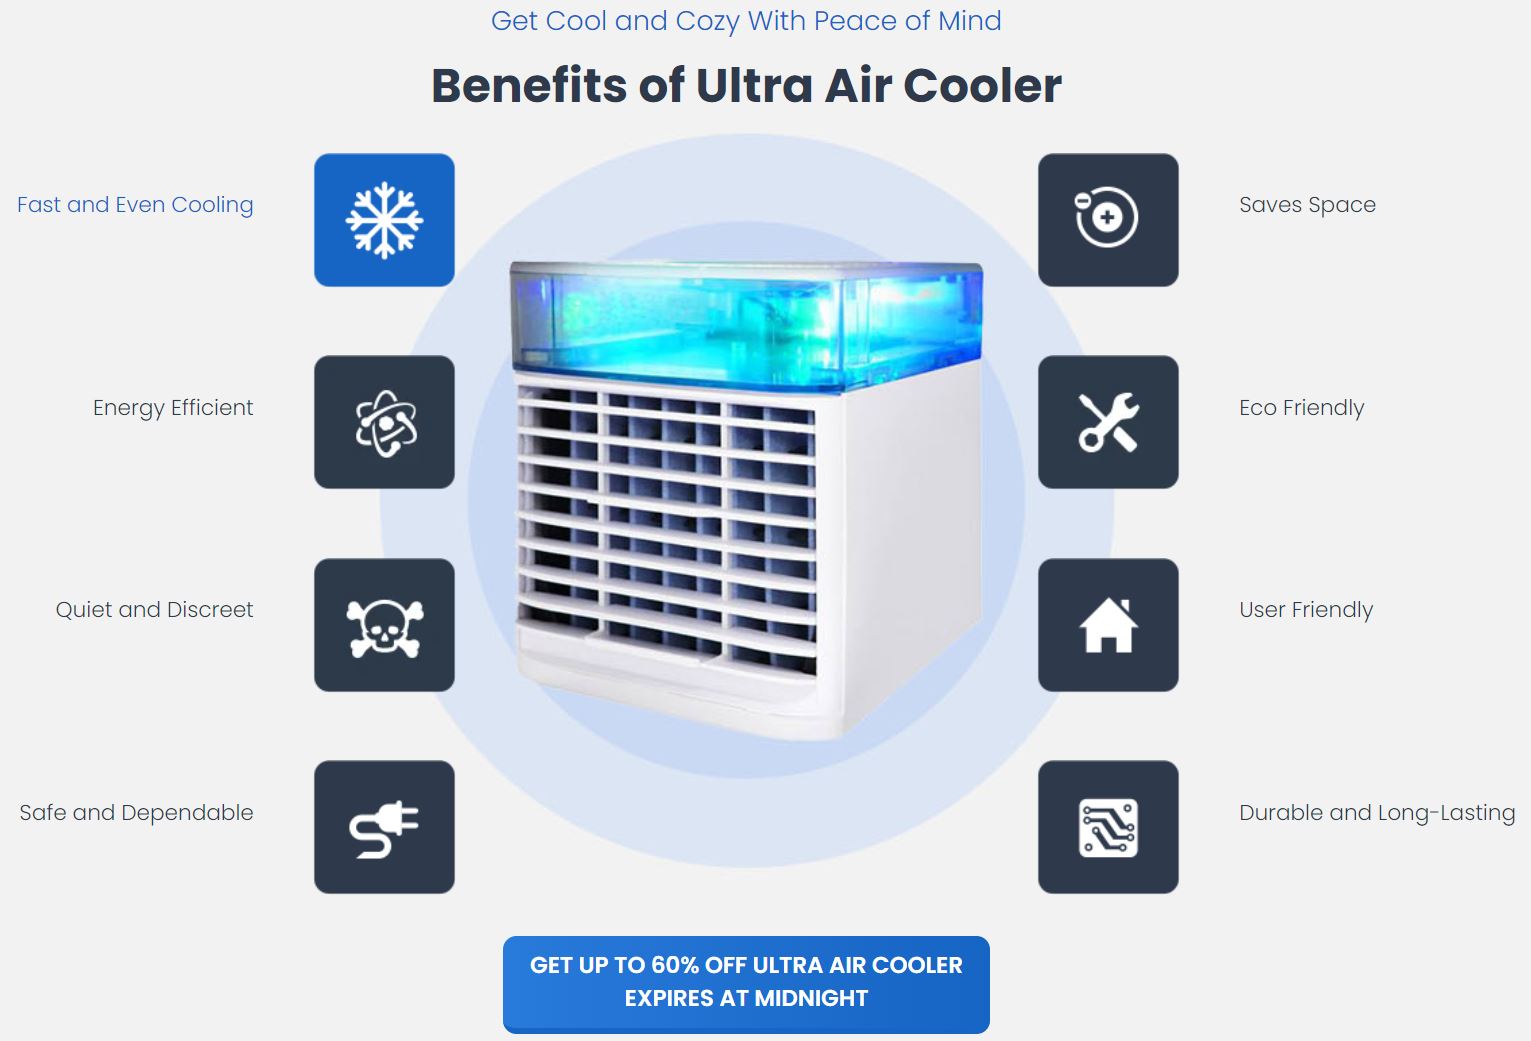 Ultra Air Cooler